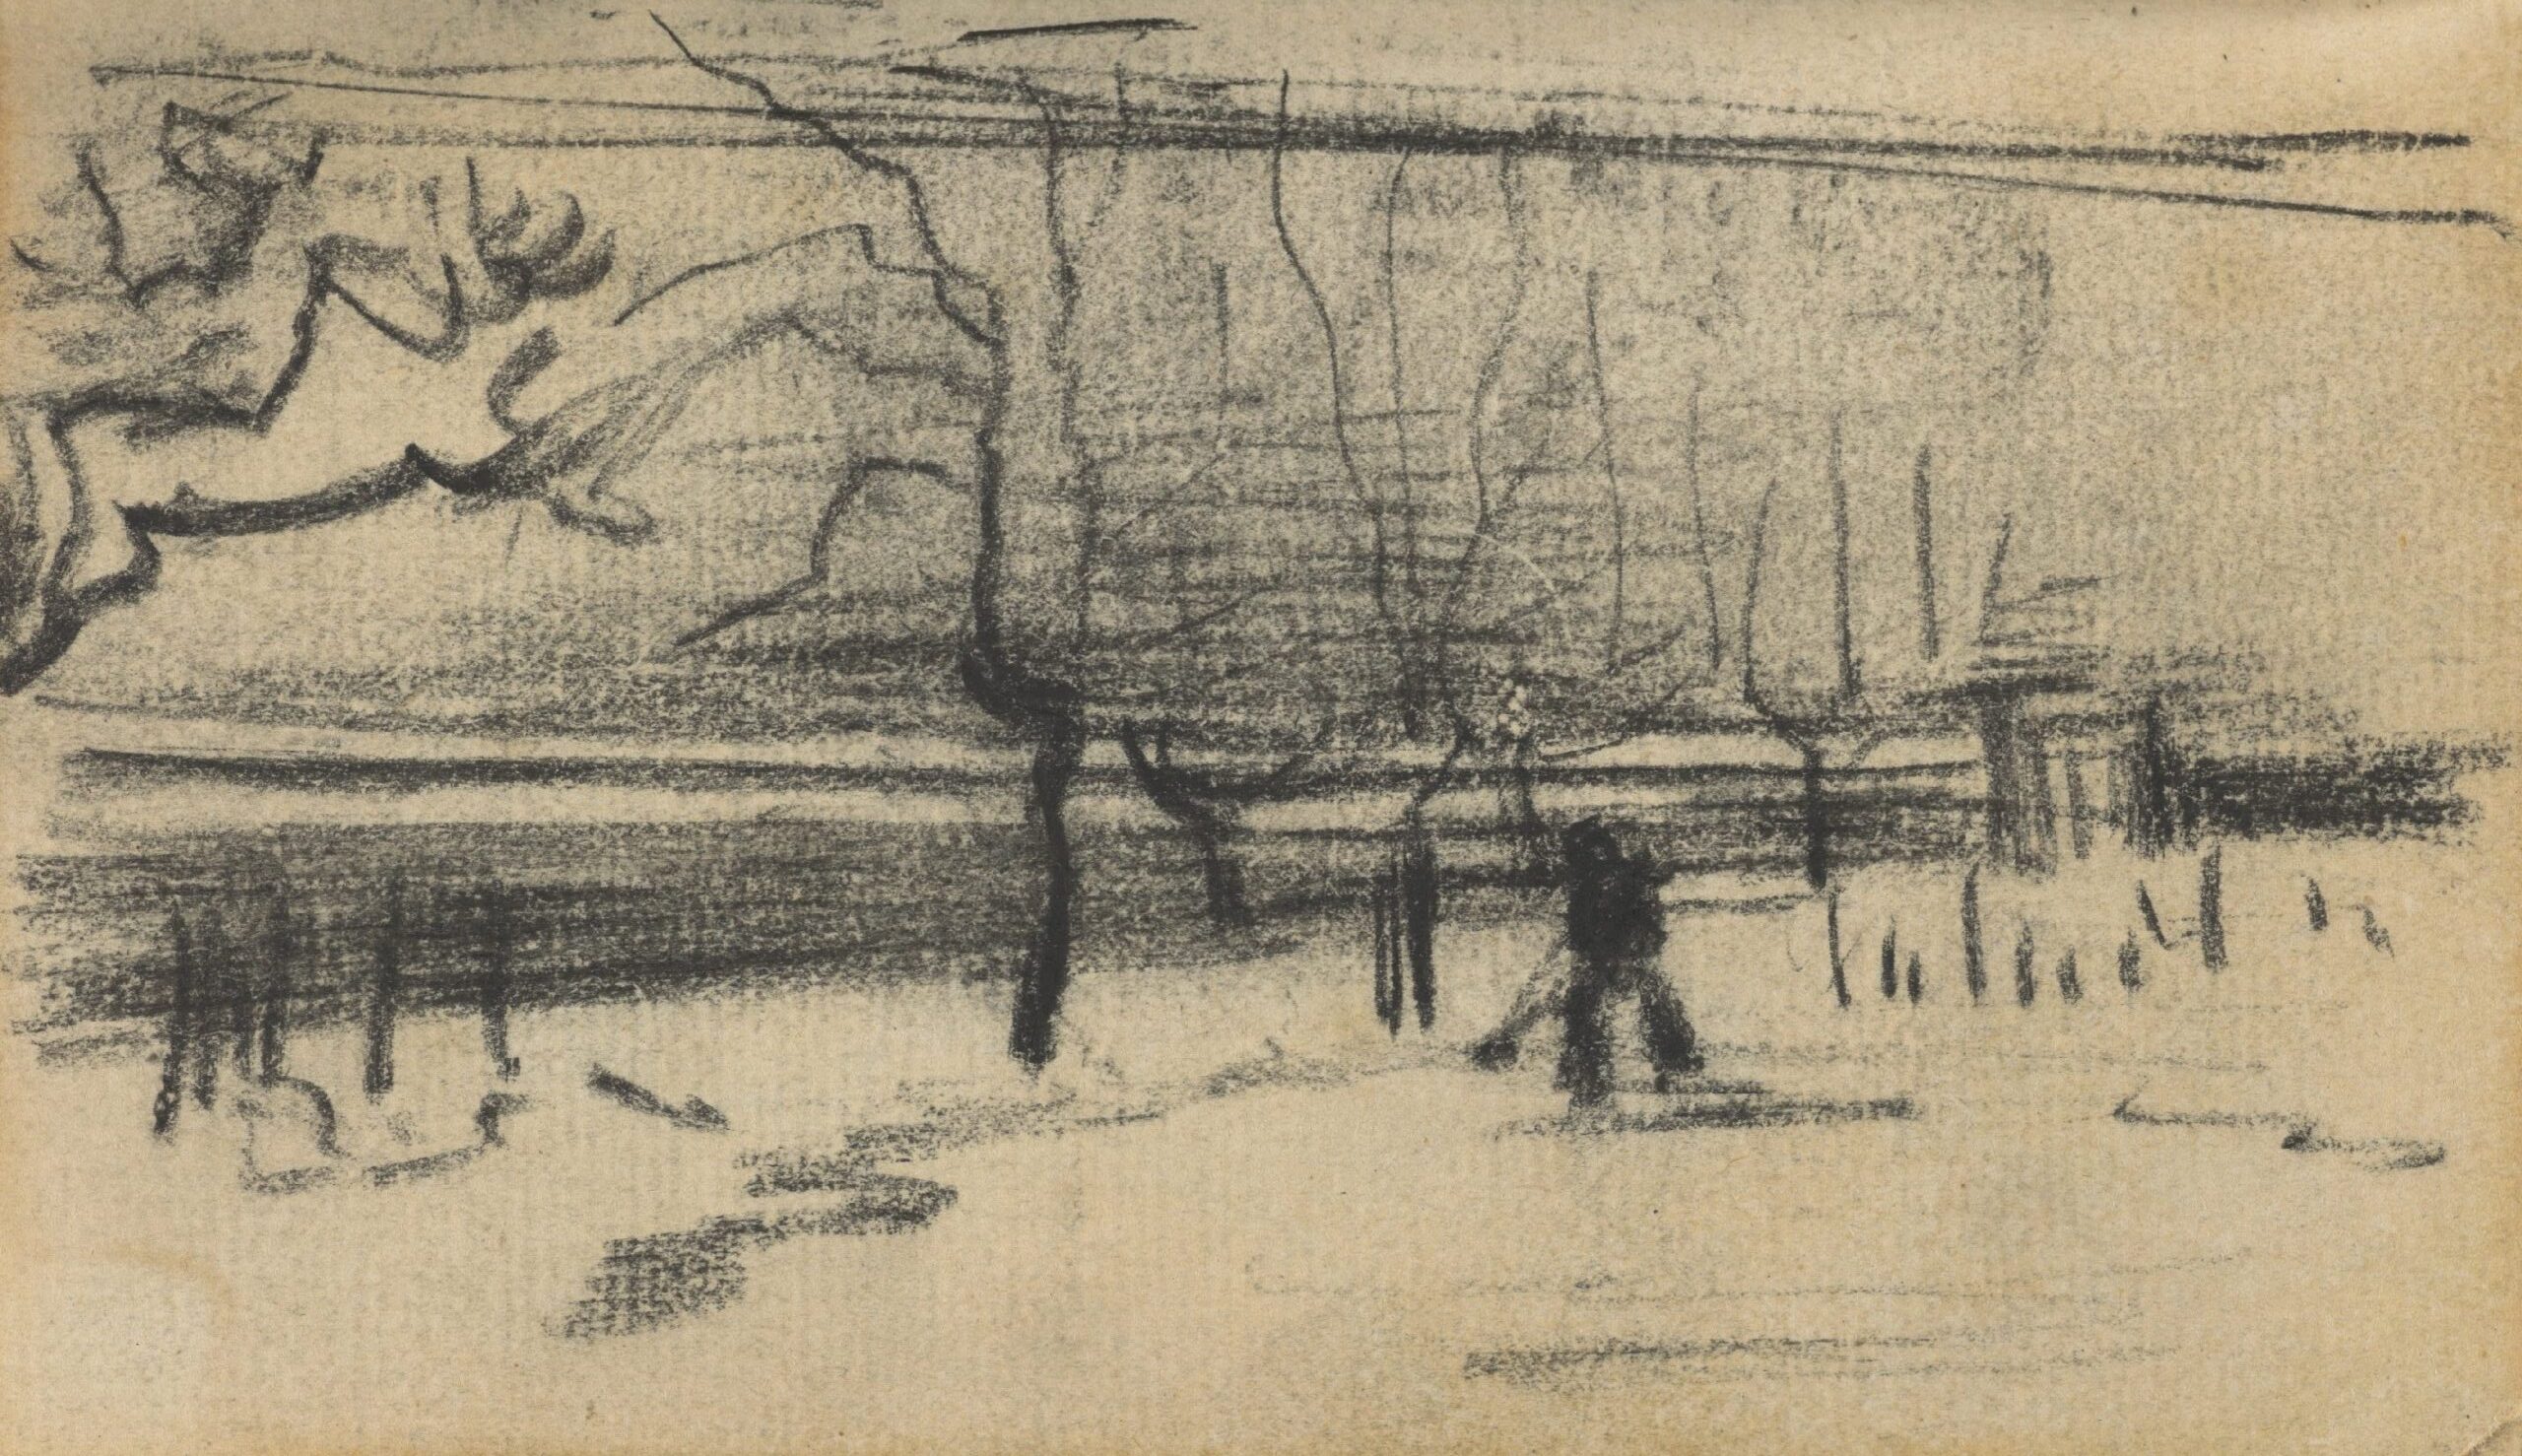 De pastorietuin in de sneeuw Vincent van Gogh (1853 - 1890), Nuenen, januari-februari 1885